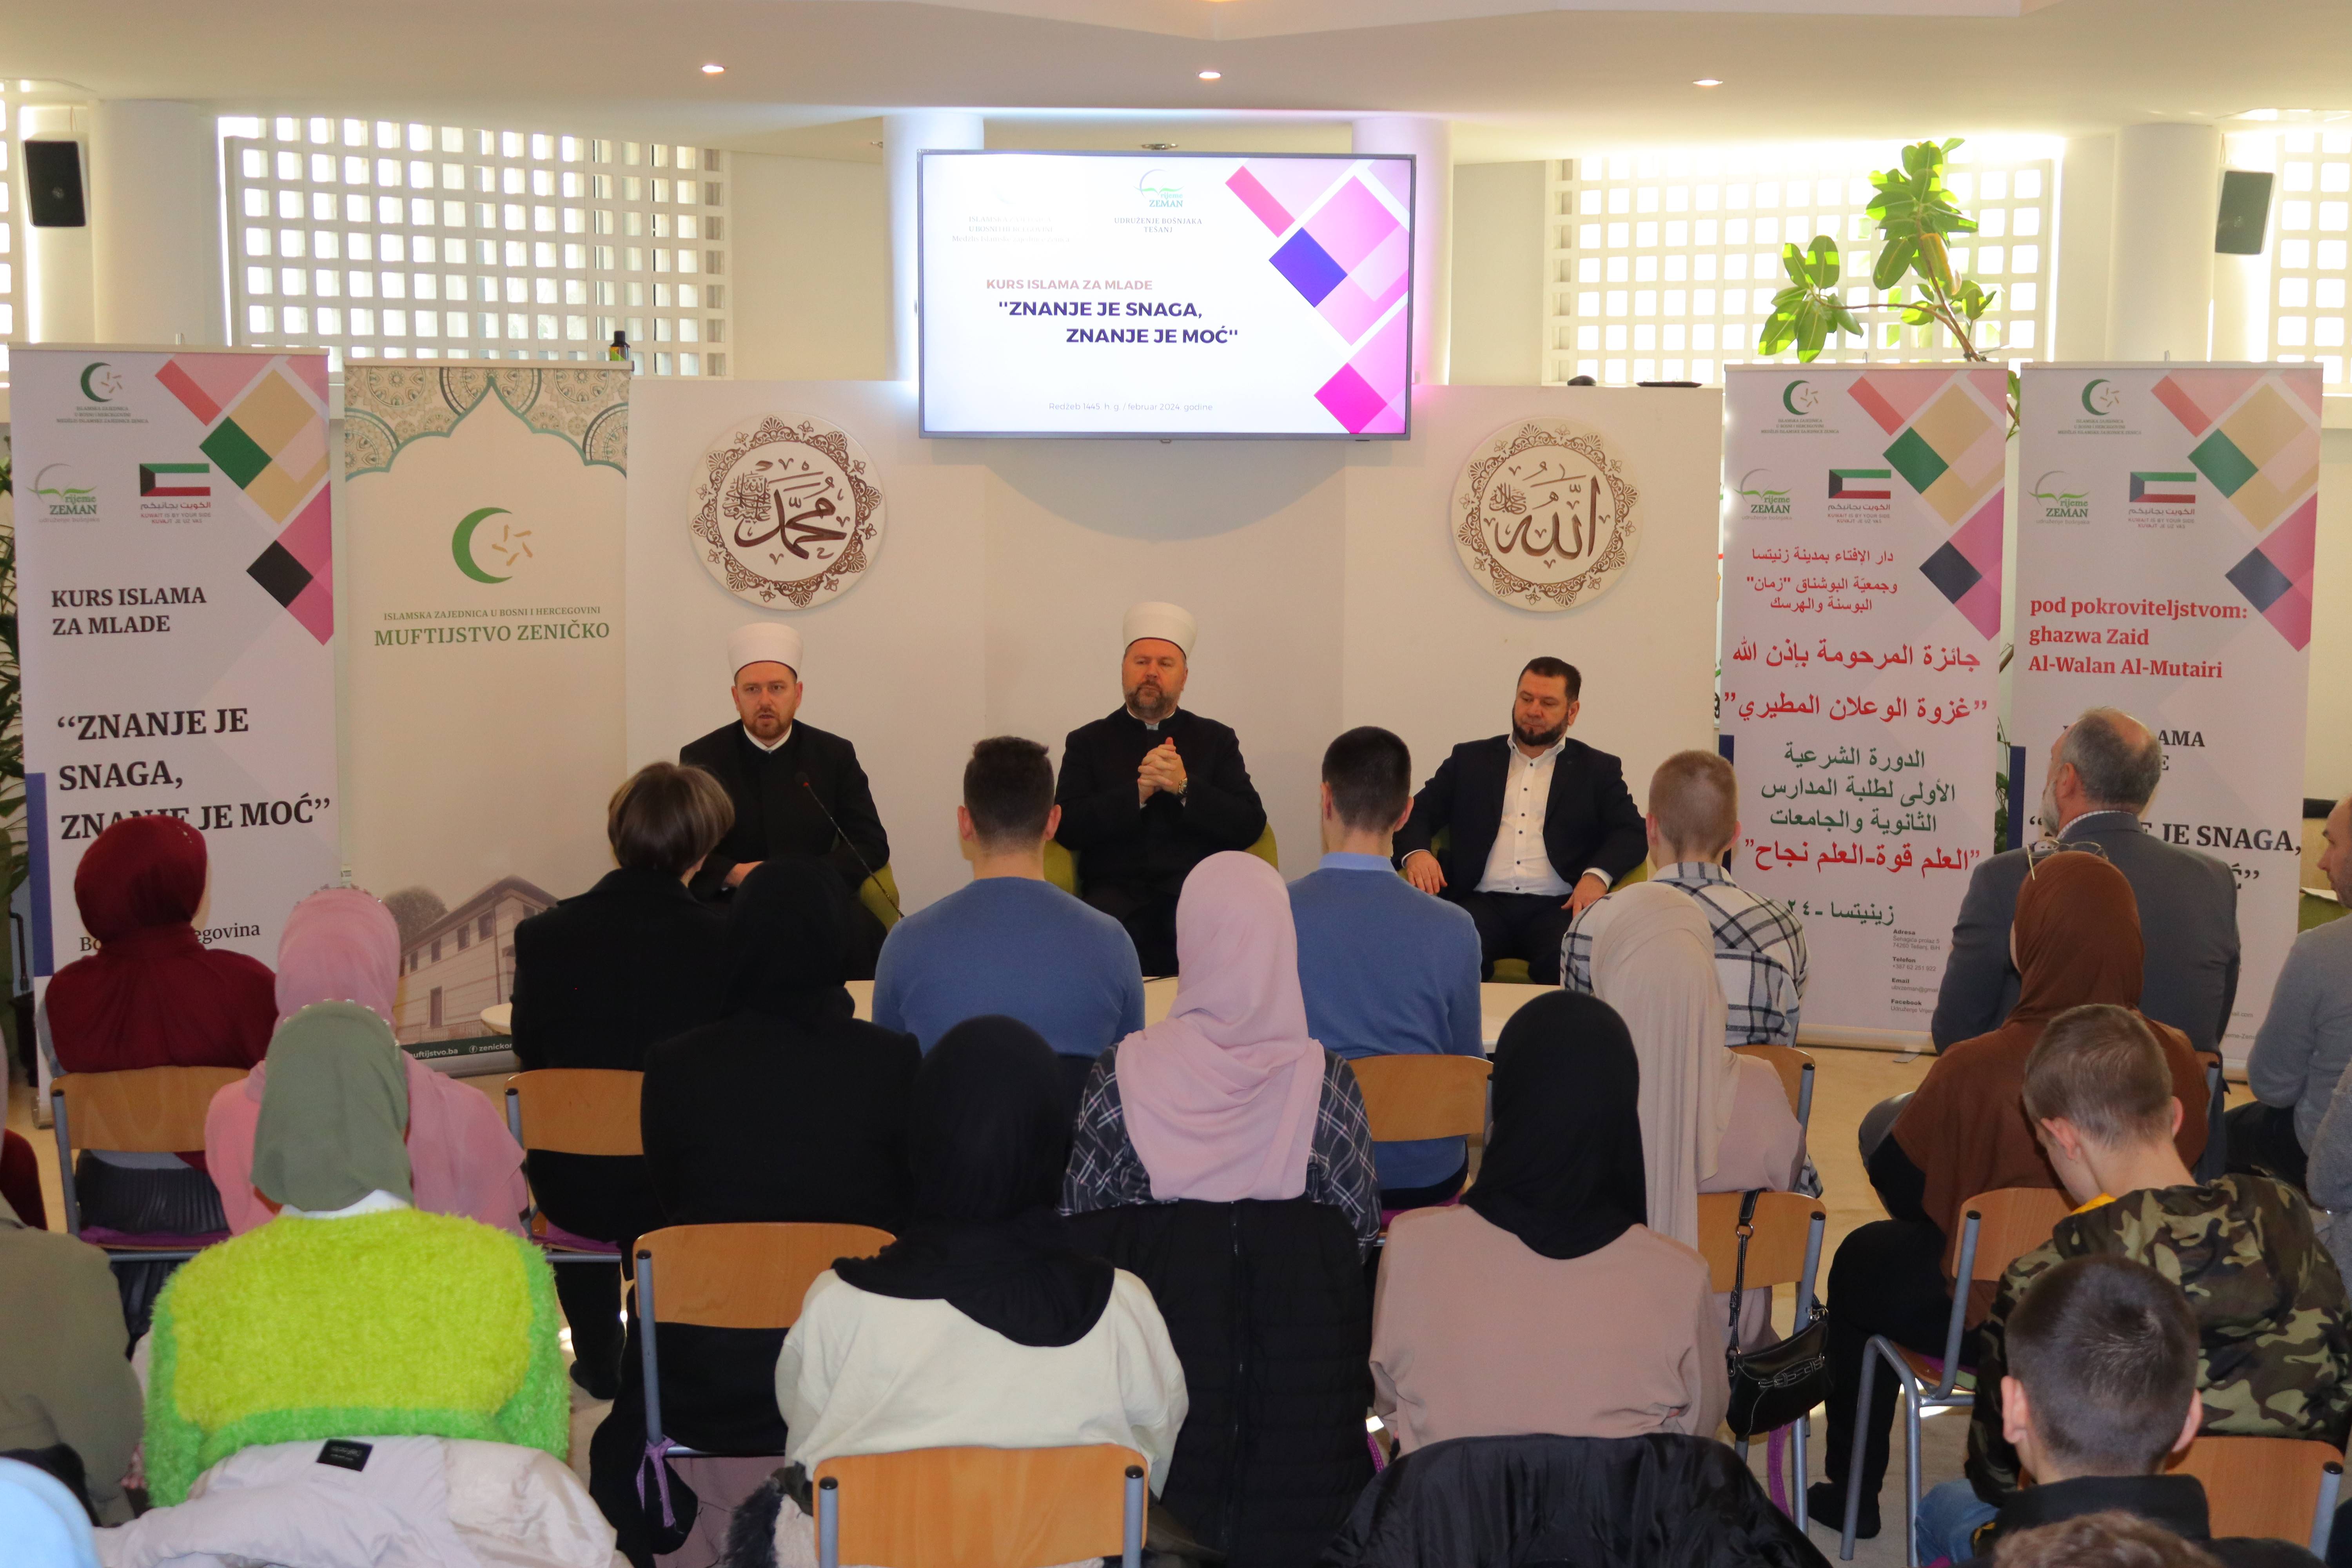 U Zenici počeo Kurs islama za mlade: “Znanje je snaga, znanje je moć”